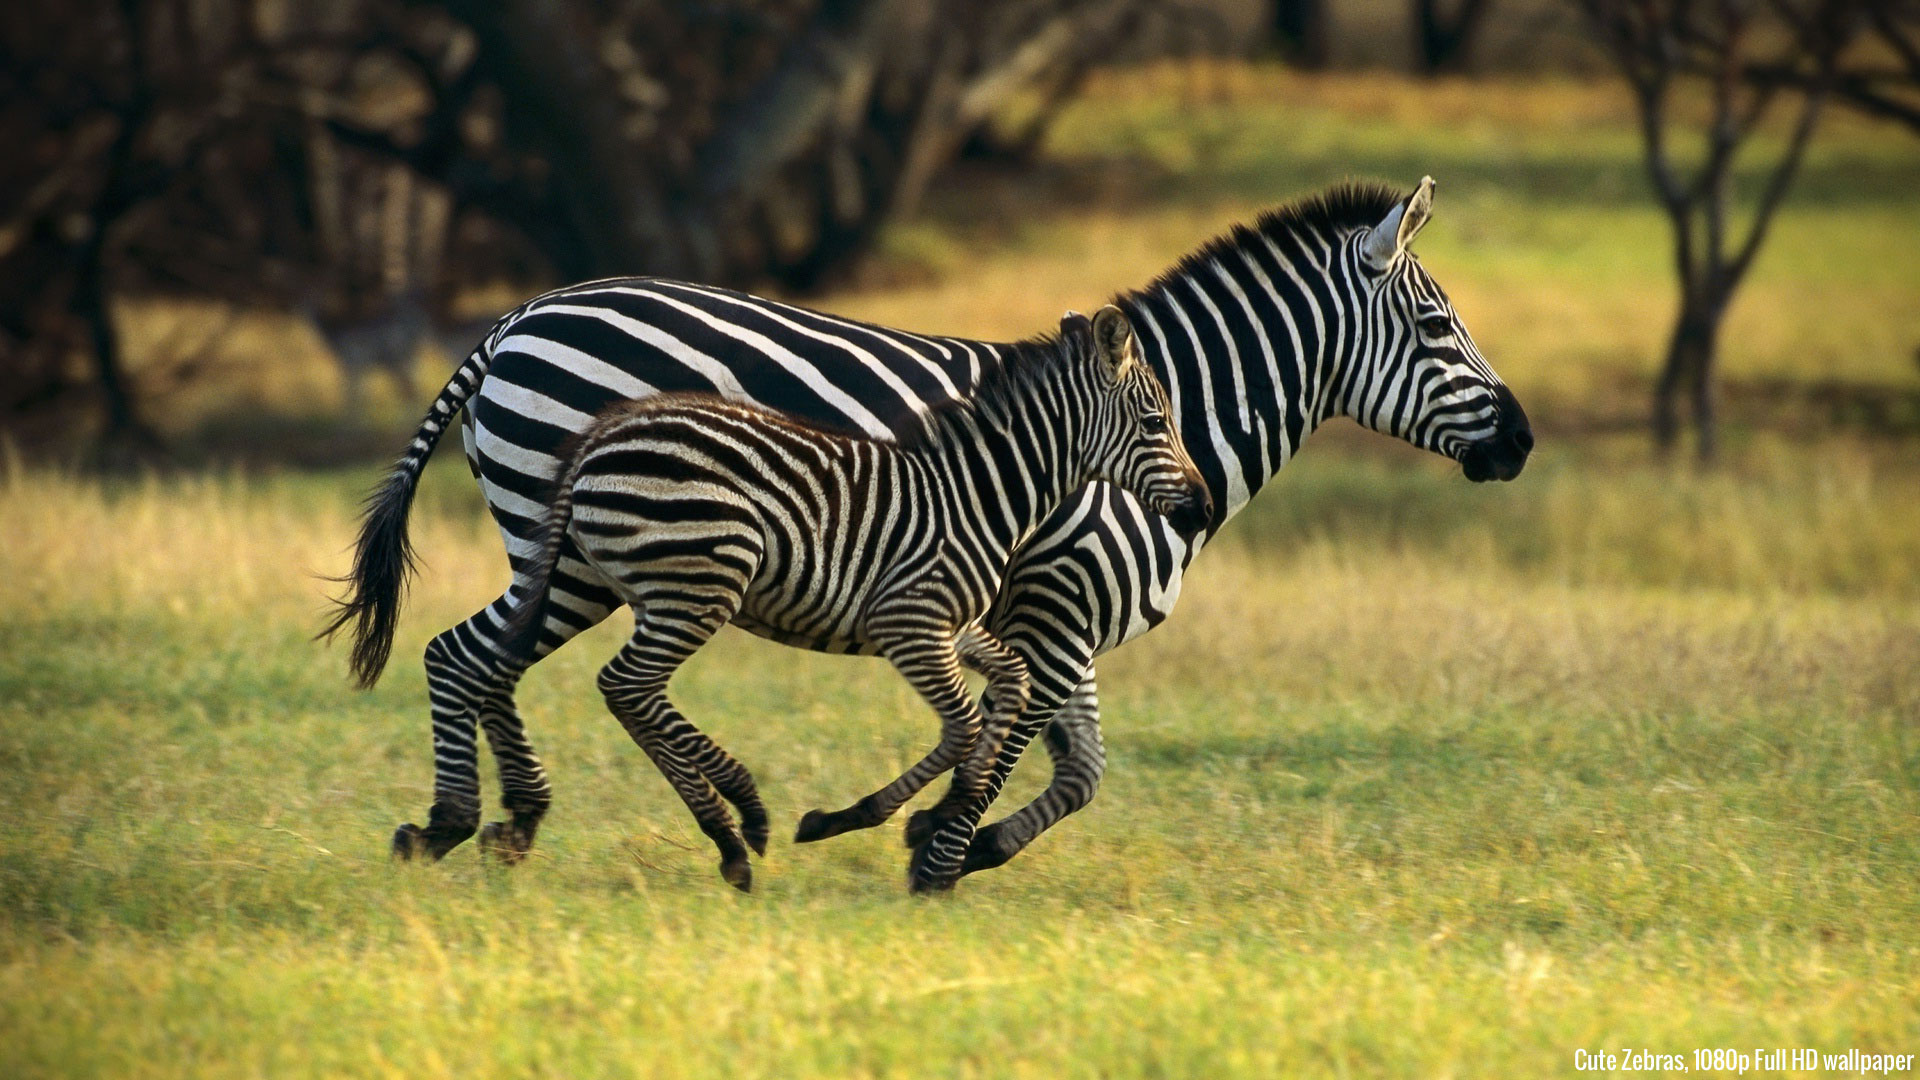 Wallpaper Zebras Cute Animals 1080p Full HD High